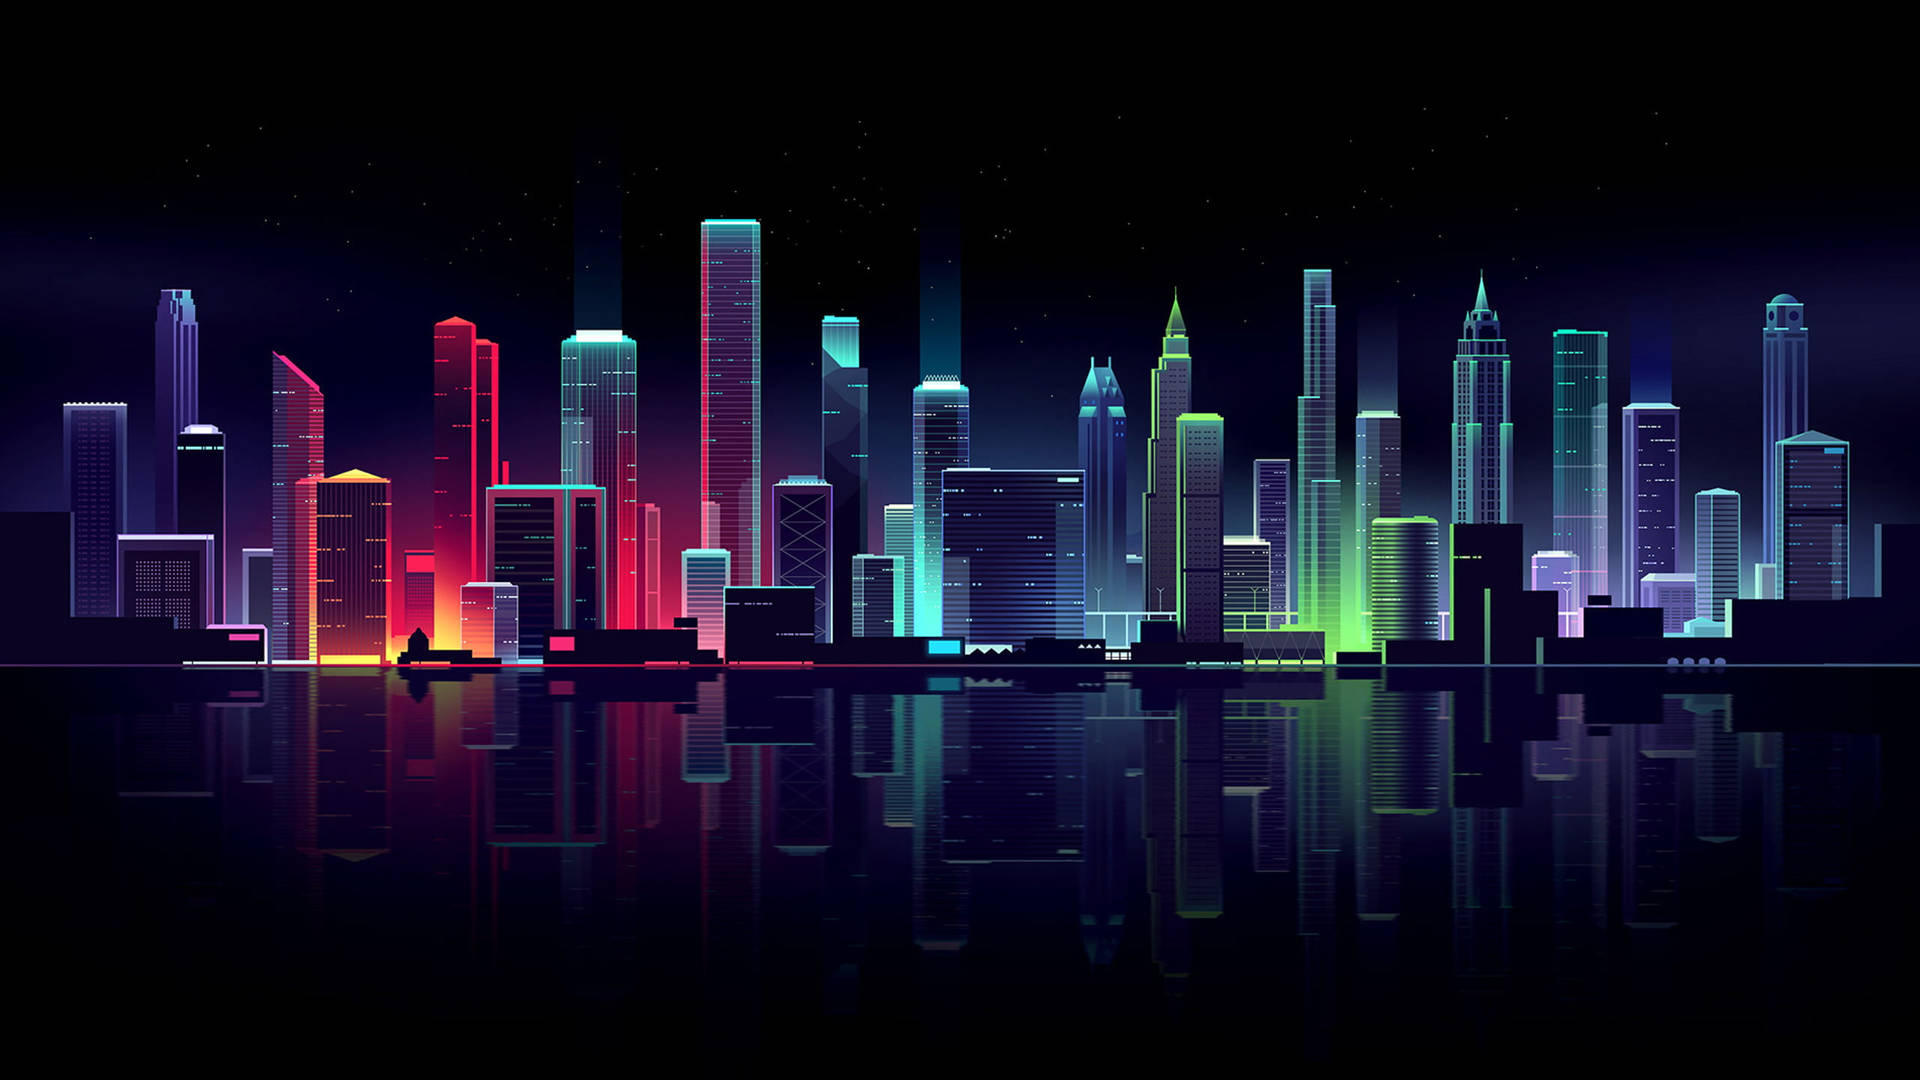 Mørk Neon City Skyline Wallpaper